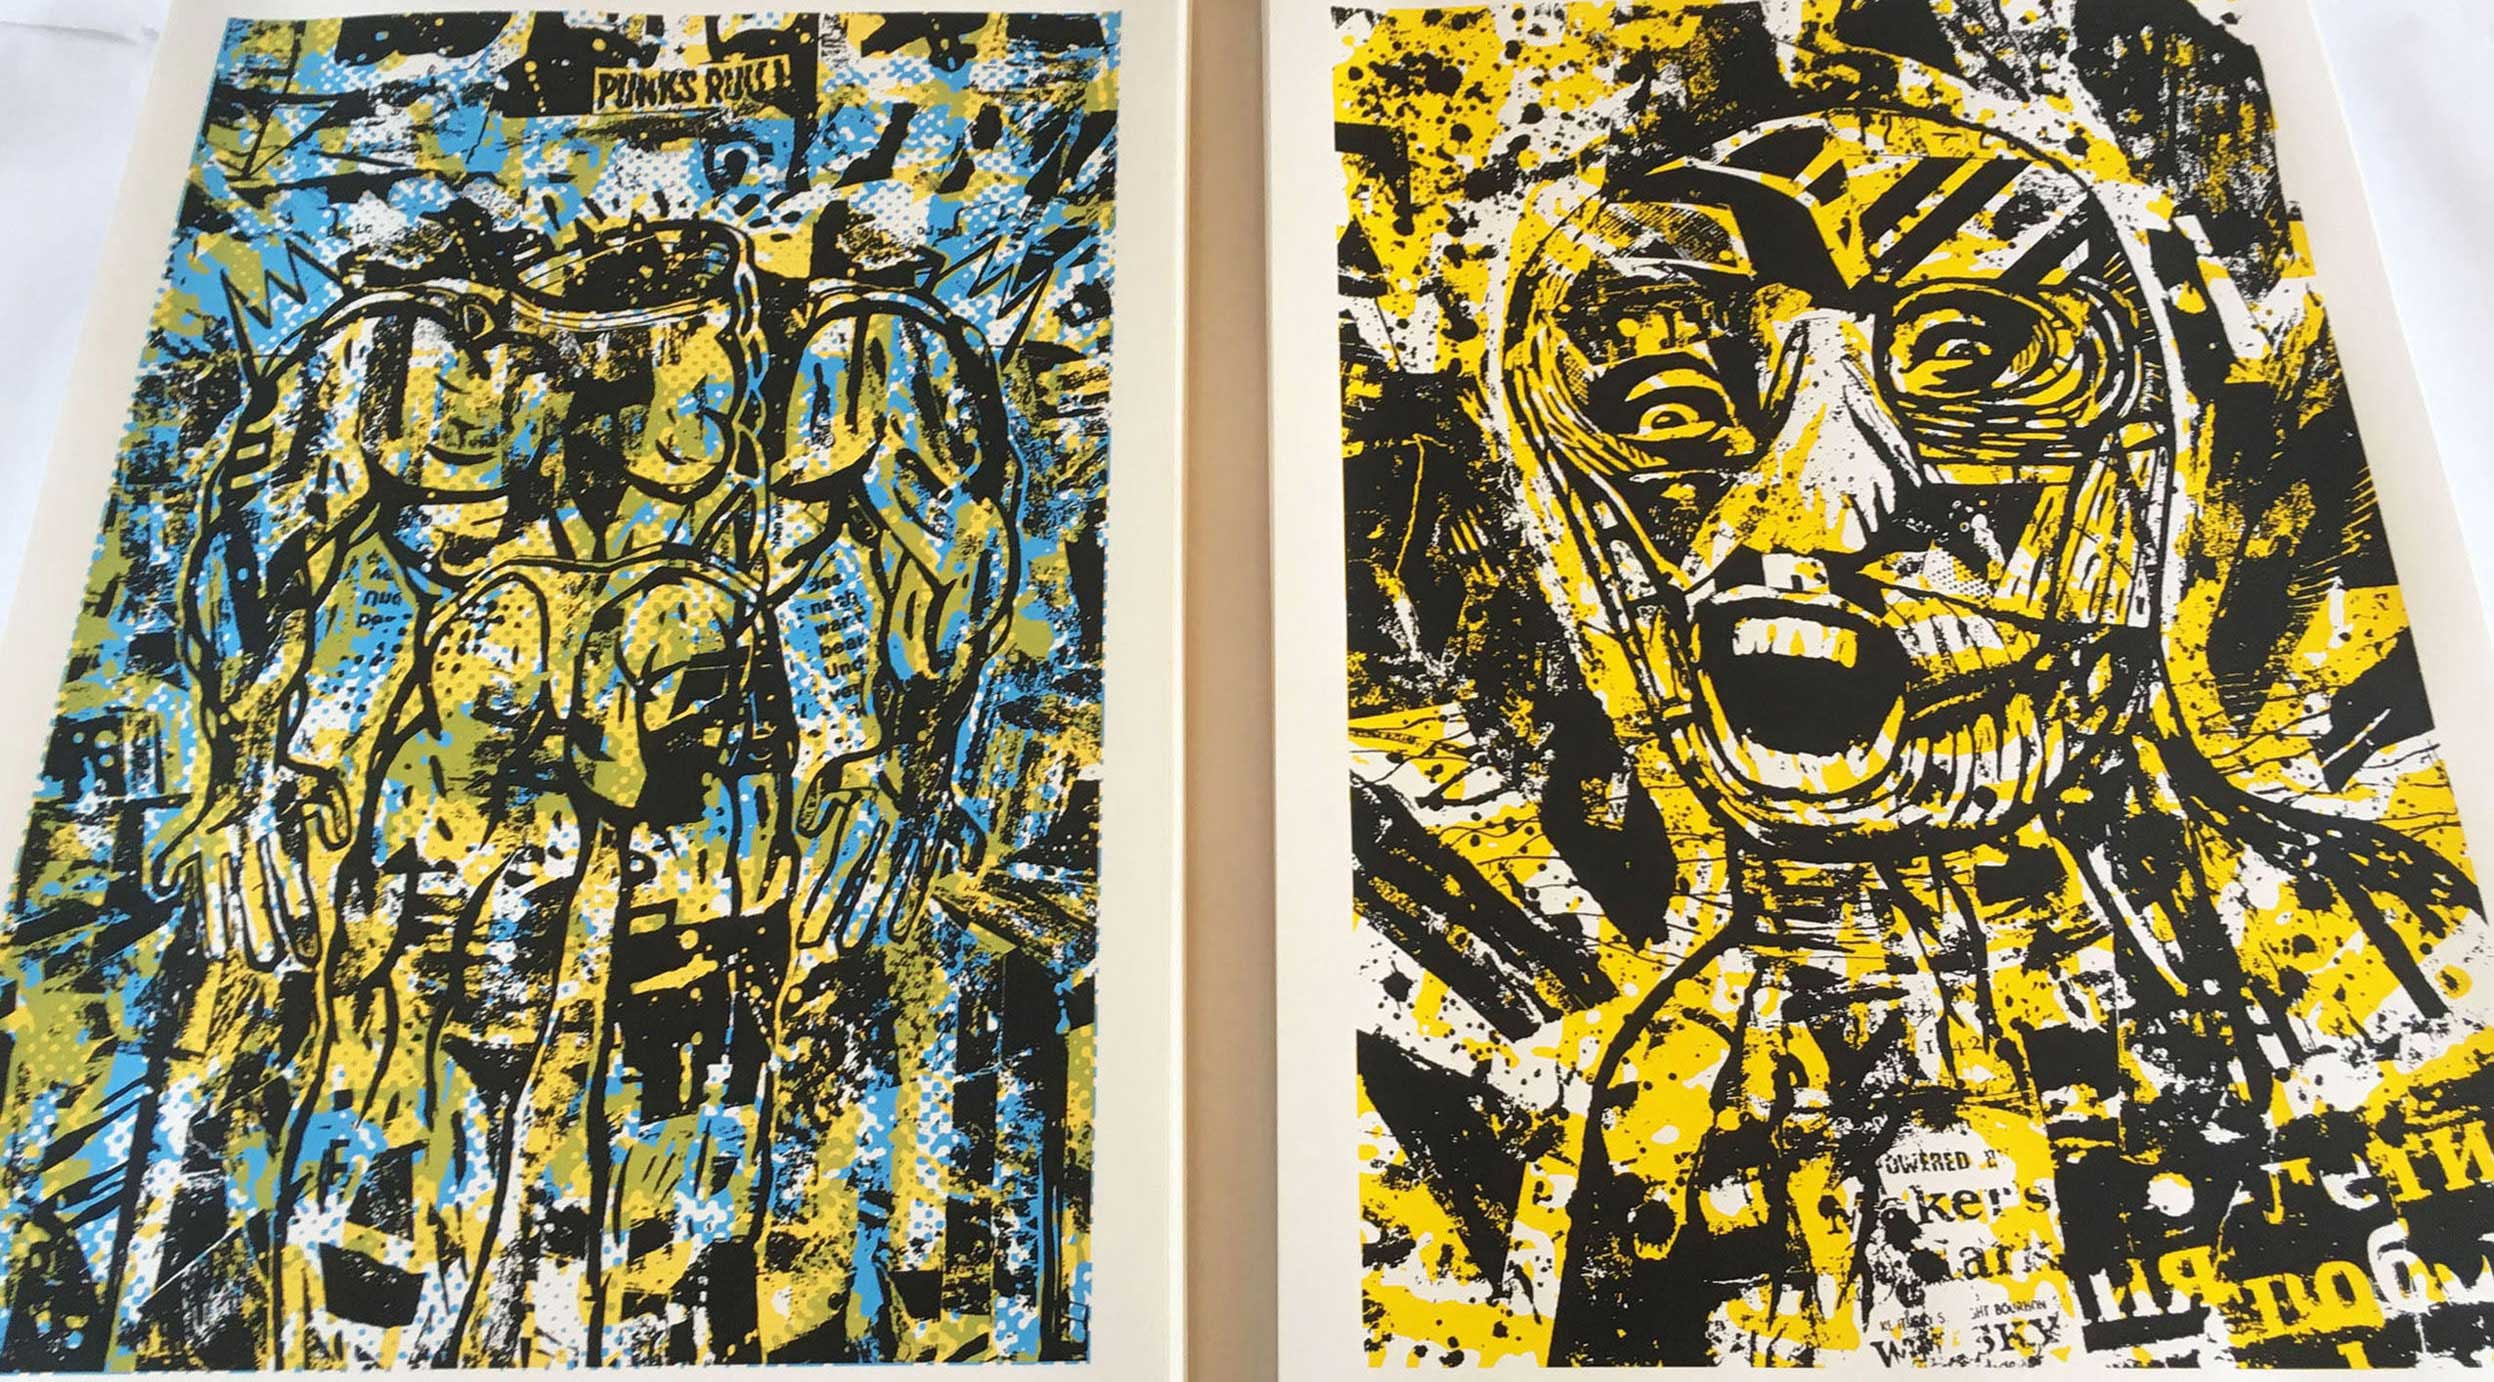 Dark anger et Punks rull, deux posters imprimés en sérigraphie, 70 x 50 cm, tirage limité à 60 exemplaires, signés et numérotés.